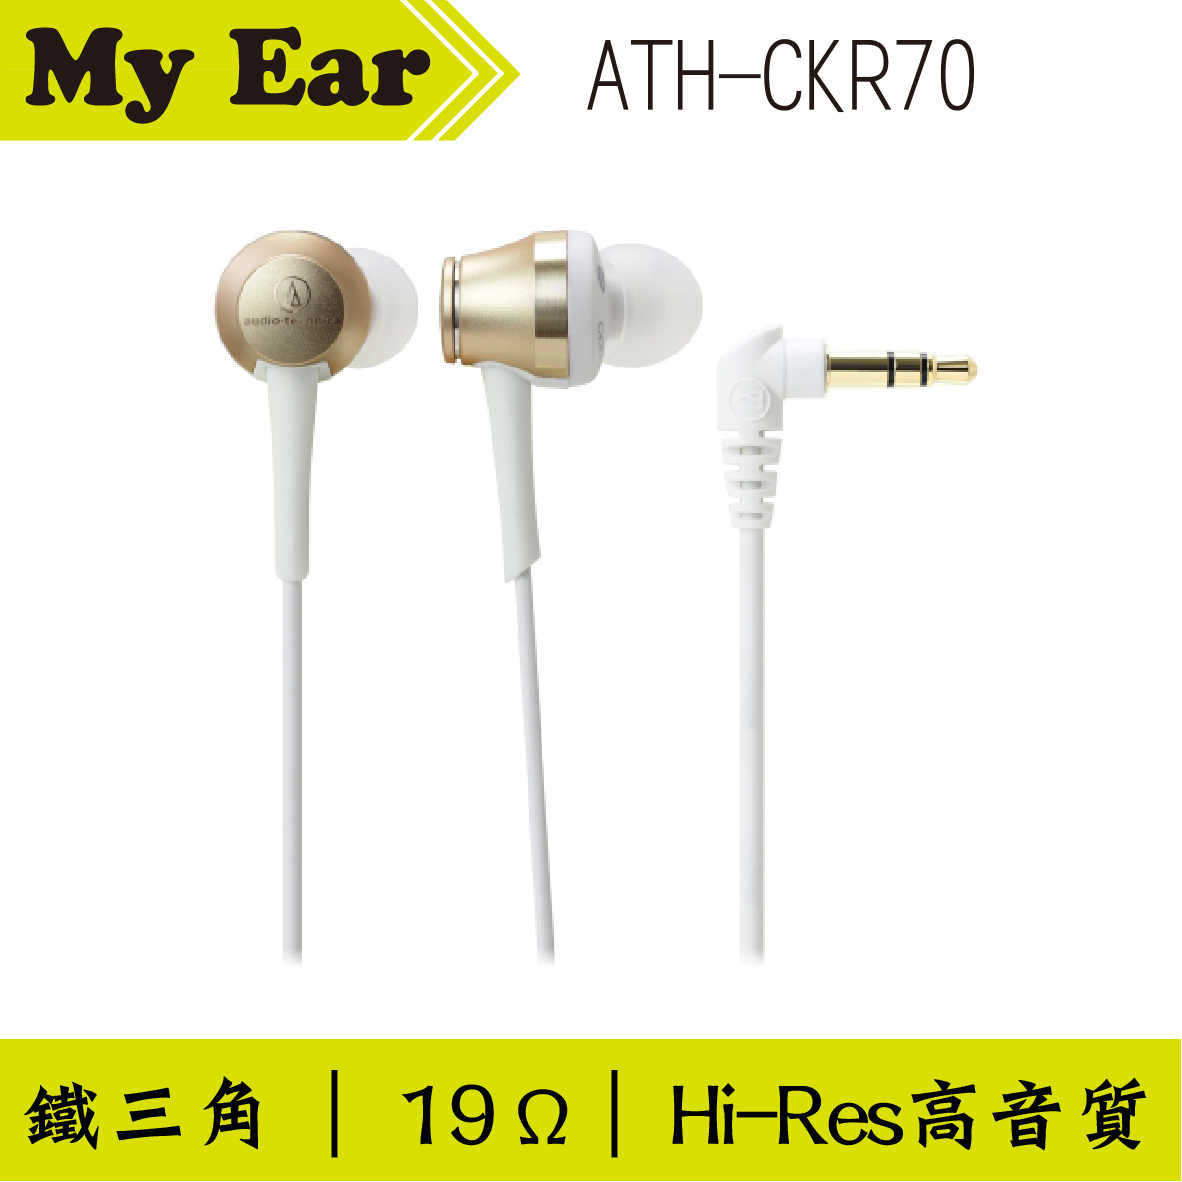 鐵三角 ATH-CKR70 耳道式耳機 紅色｜My Ear 耳機專門店